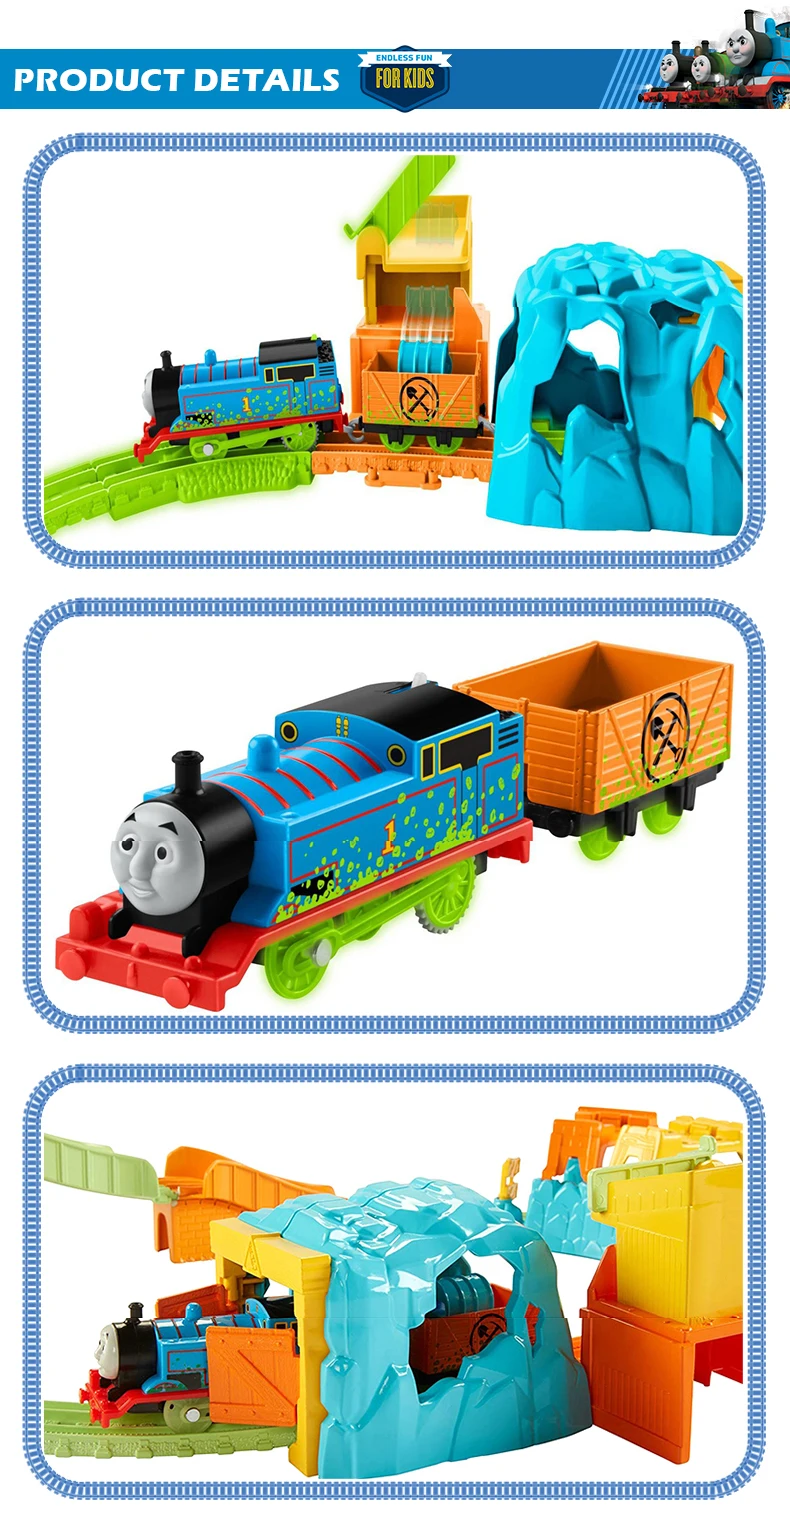 С принтом Томас и его друзья паровозы трек игровой набор ж/д строительные игрушки «Томас и его грузовик светящиеся шахты FBK52 подарок ребенку на день рождения